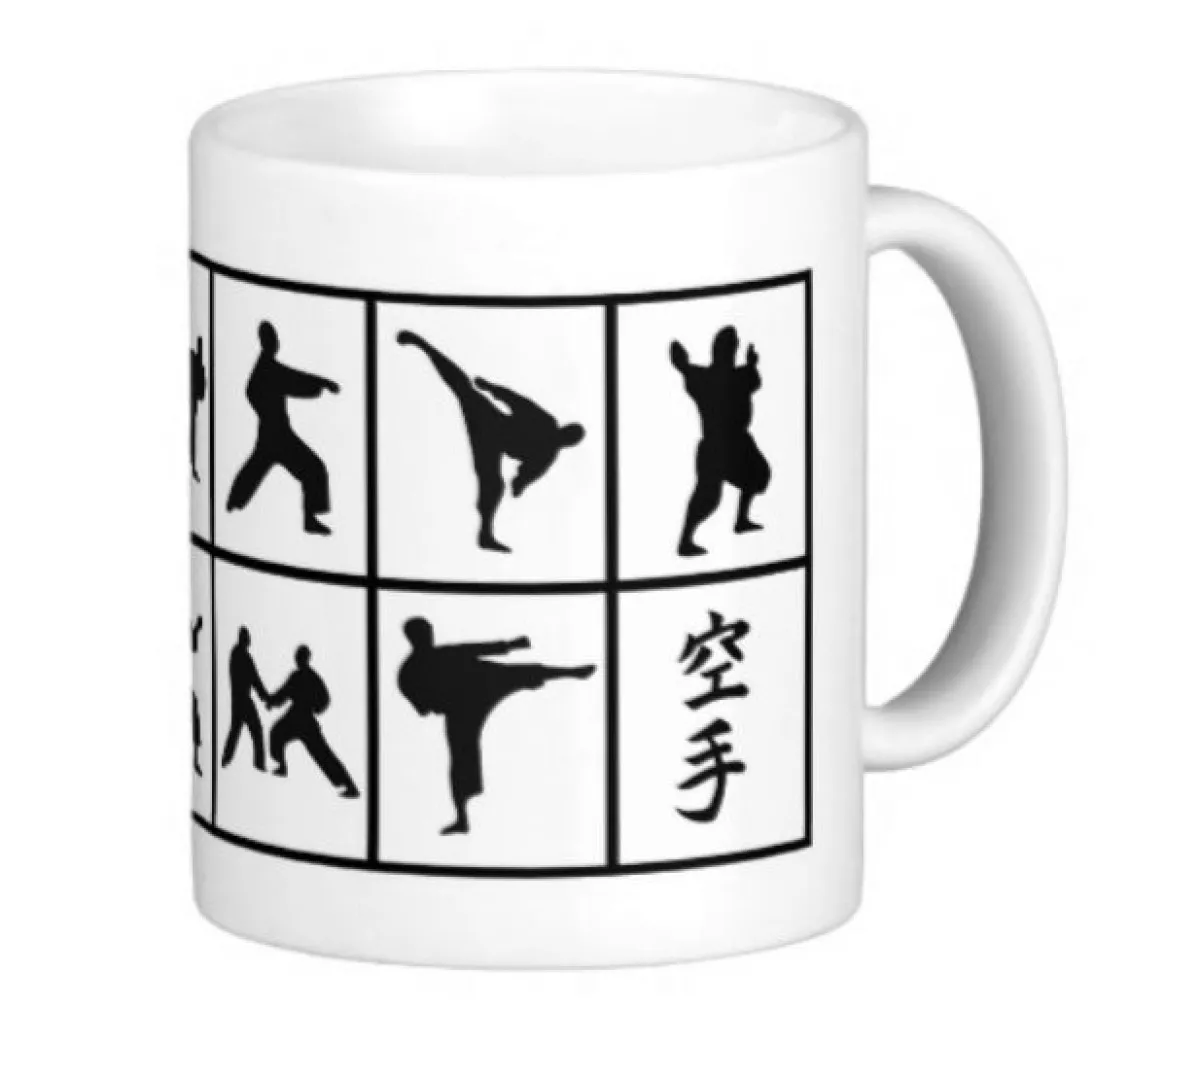 Mug karate figures